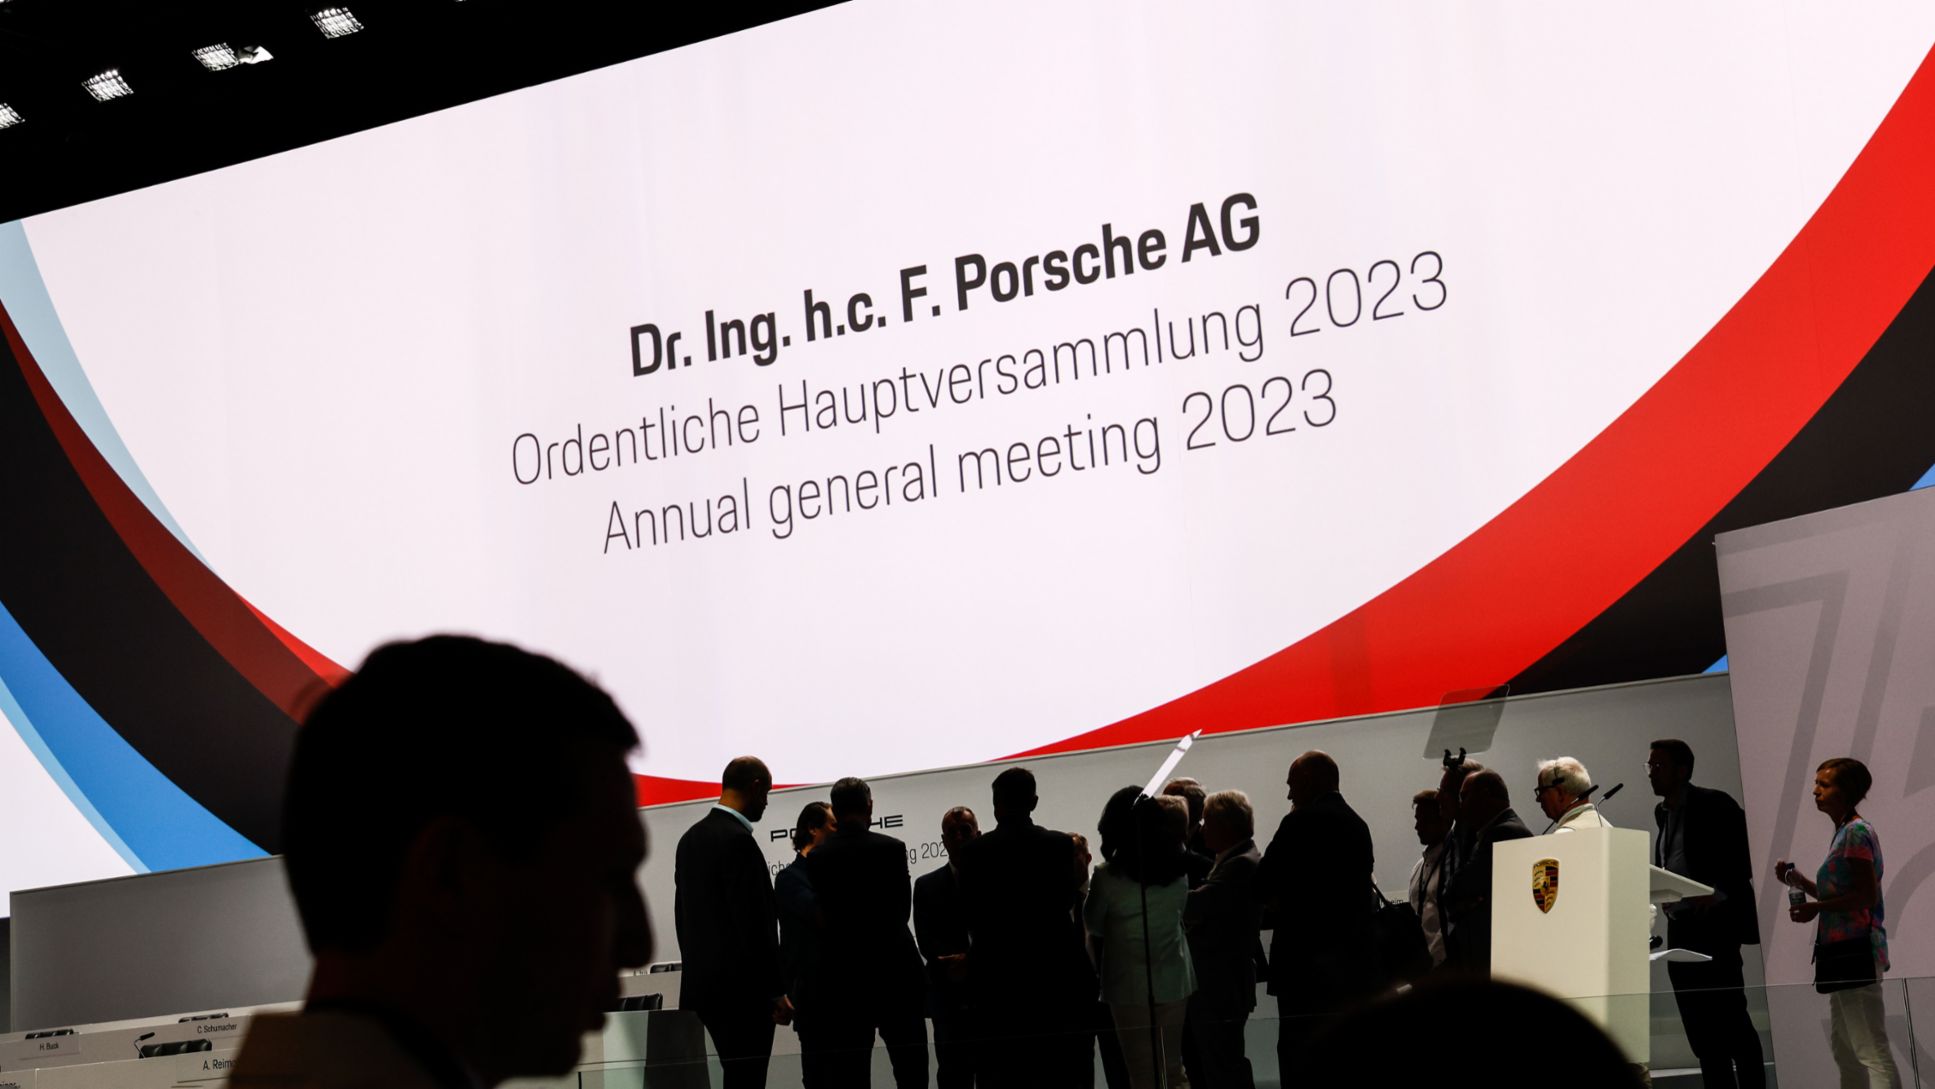 Annual general meeting, 2023, Porsche AG